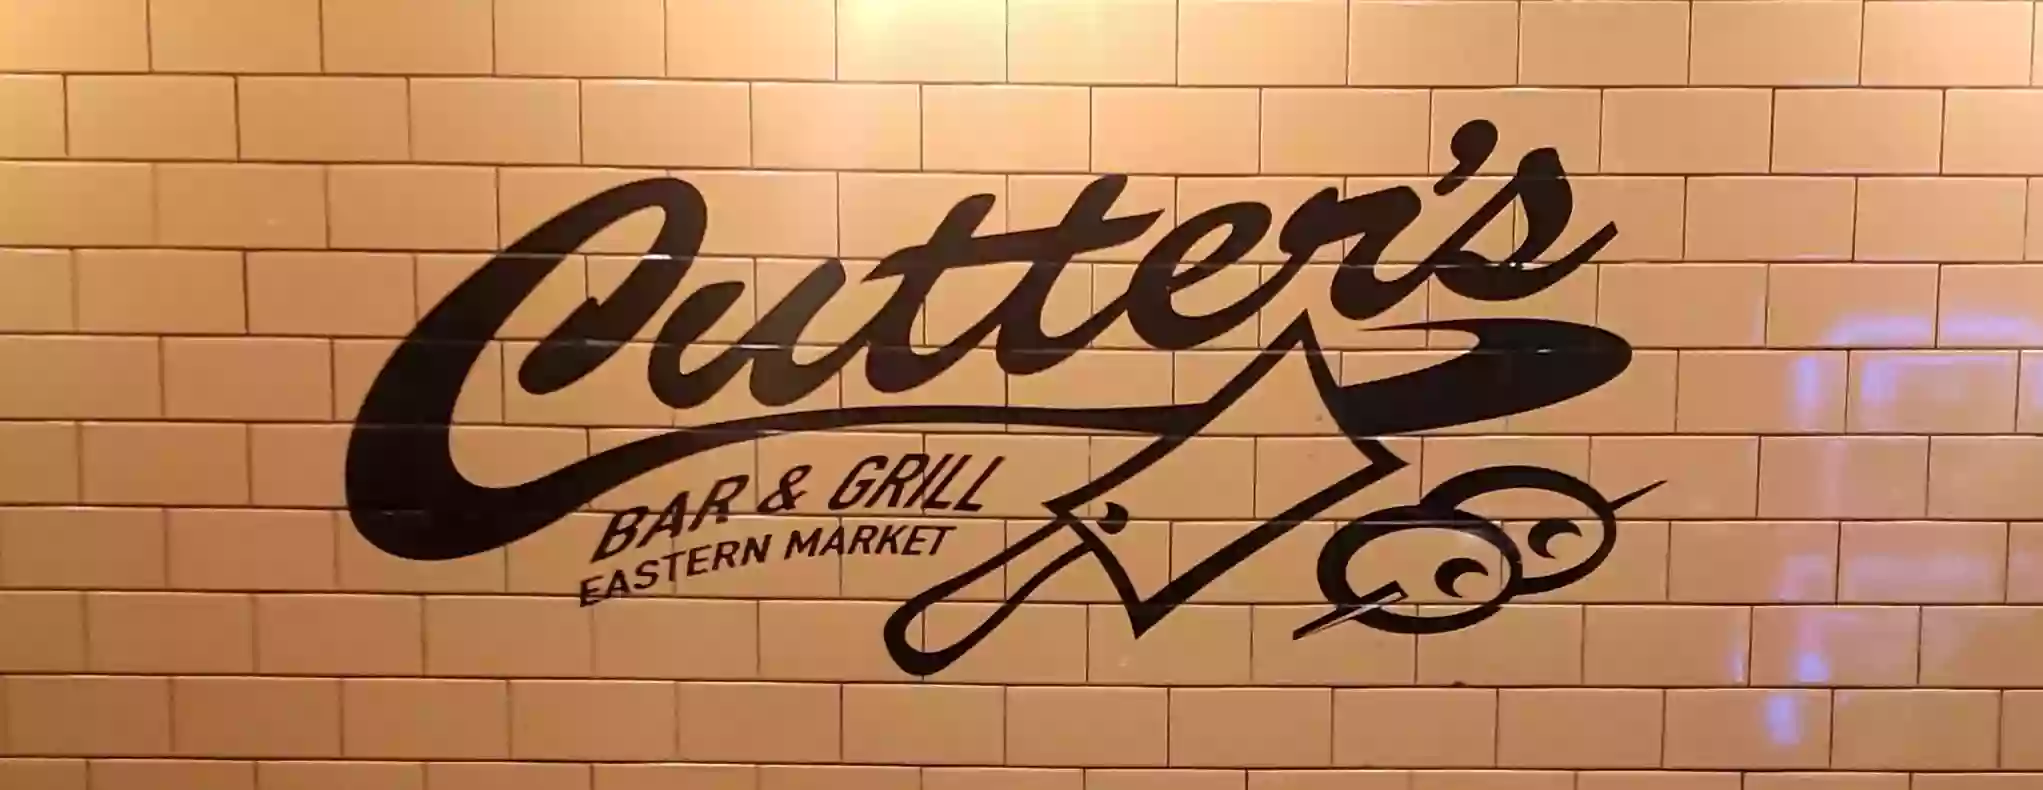 Cutter's Bar & Grill